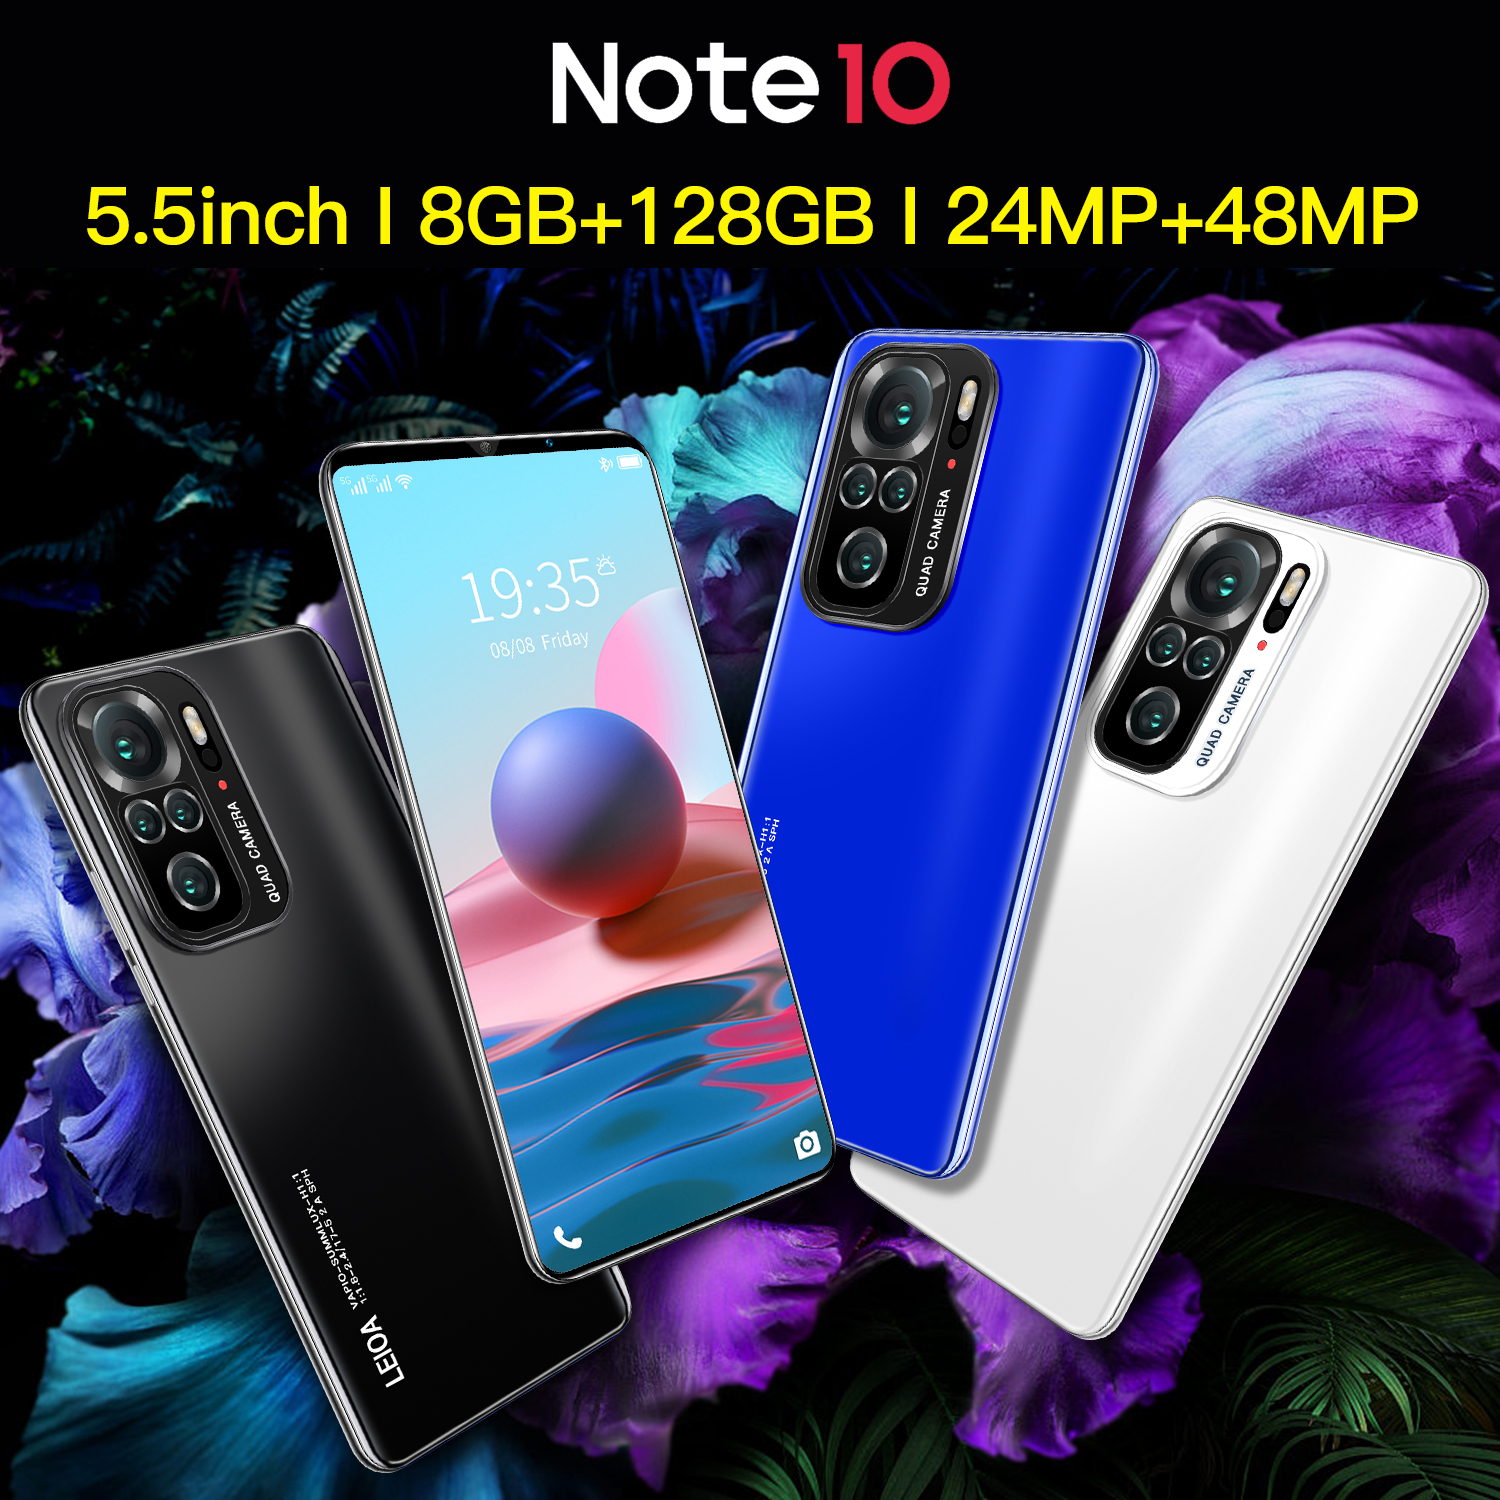 ภาพประกอบคำอธิบาย Note10max โทรศัพท์ราคาถูก สมาร์ทโฟนหน่วยความจำ 12G+512G จอ 6.3นิ้ว HD แบตเตอรี่ 4800 mAh ถ่ายภาพ ชมภาพยนต์ เกม ข้อเสนอพิเศษ ประกันศูนย์ไทย 1 ป Smartphones